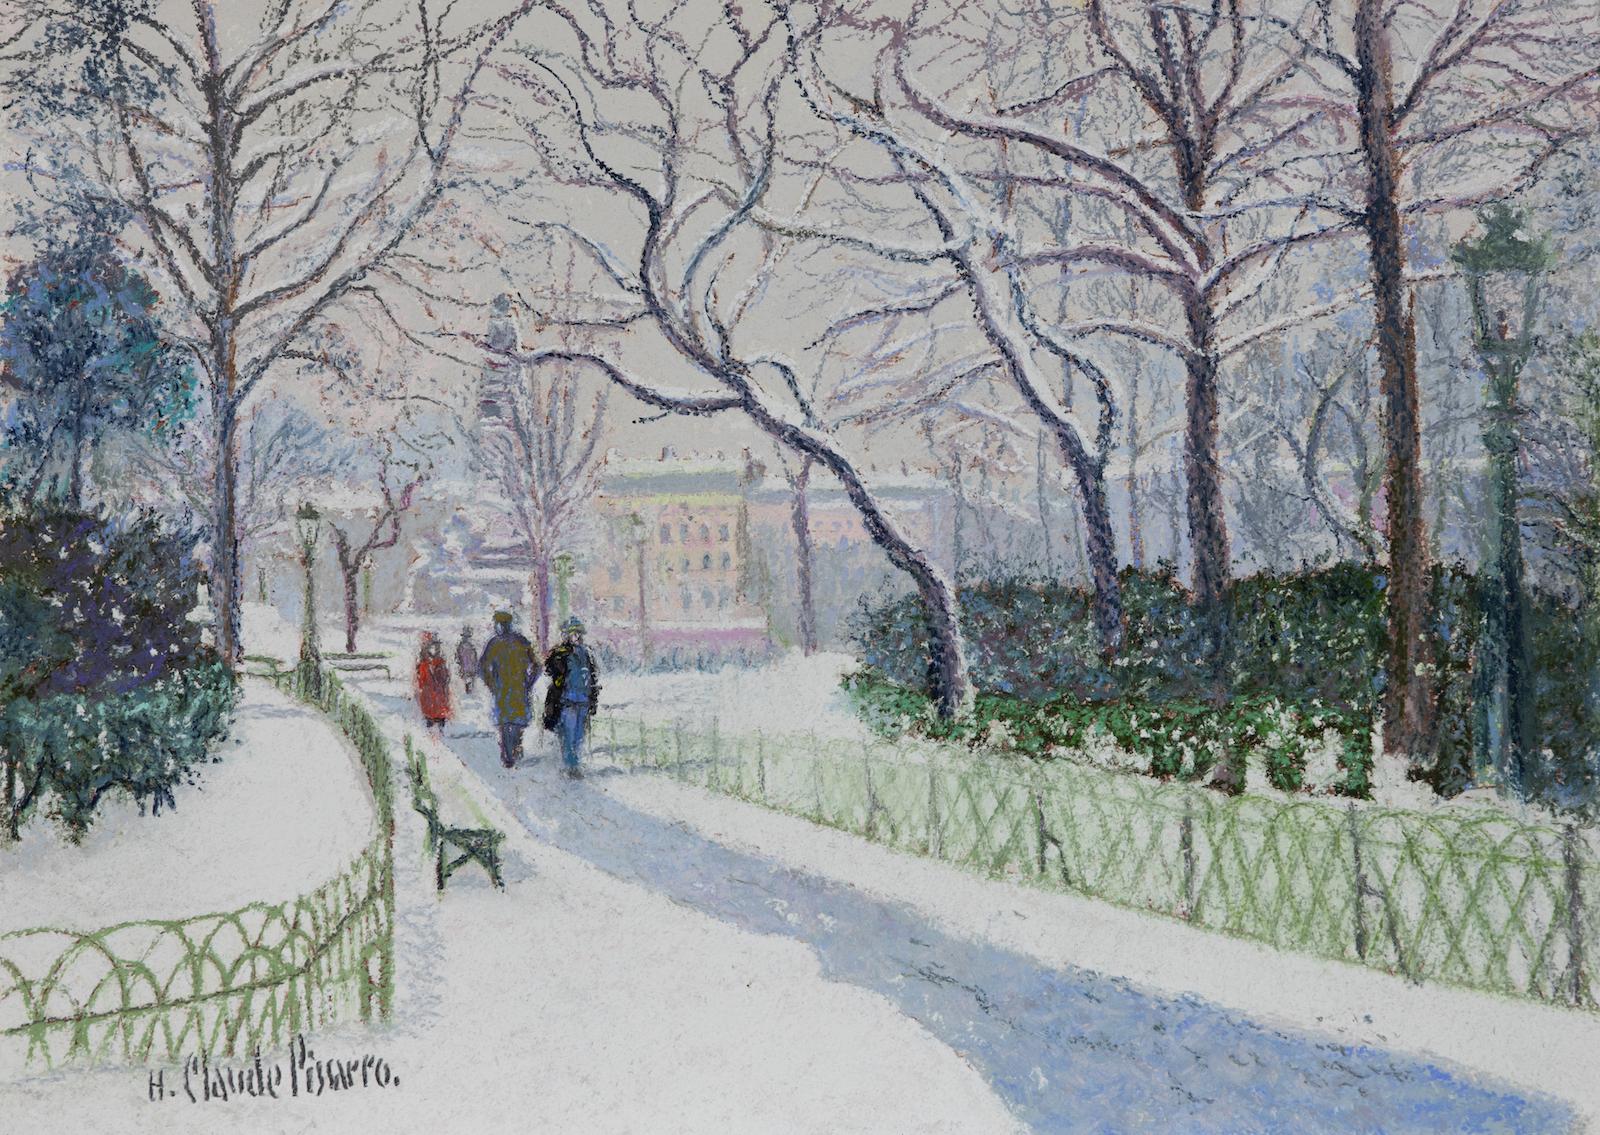 La Place Carnot Sous la Neige (Lyon) von H. Claude Pissarro – Schneeszene-Gemälde